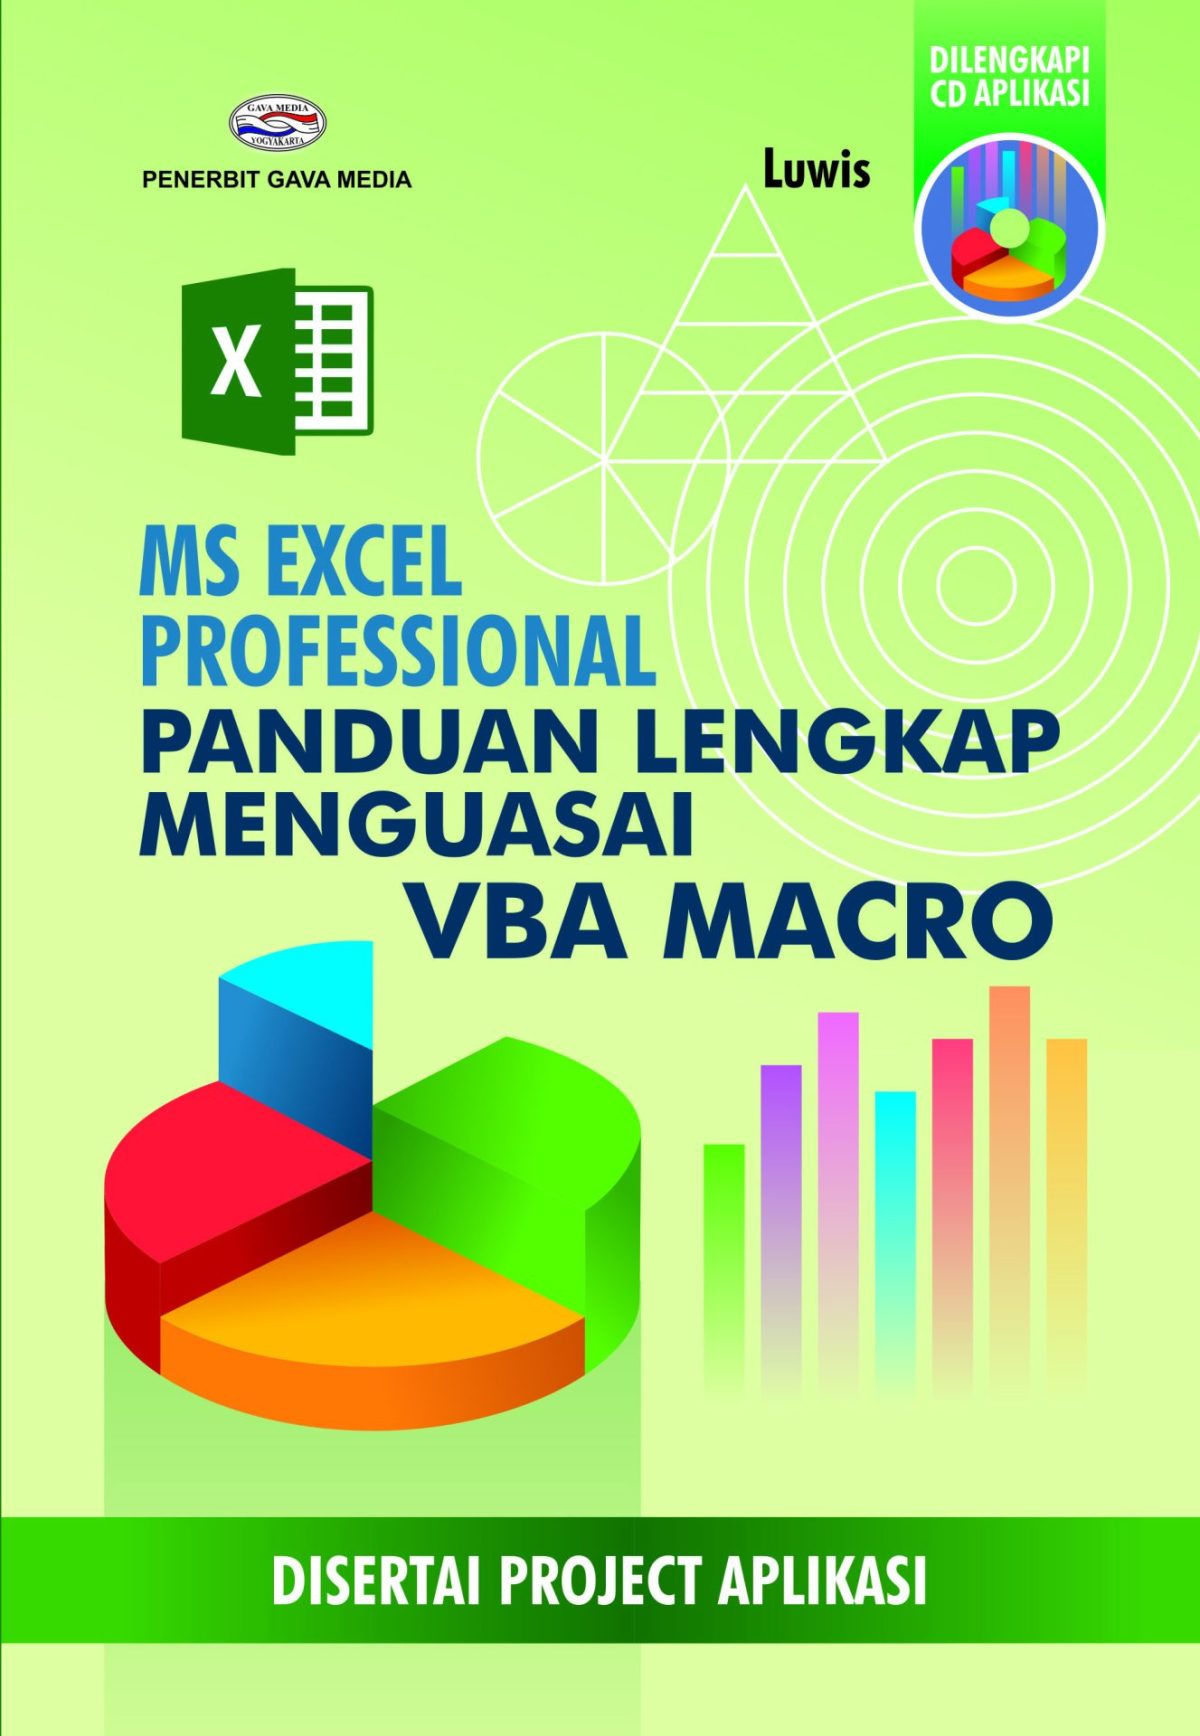 Ms Excel Professional Panduan Lengkap Menguasai VBA Macro ( Disertai Project Aplikasi )